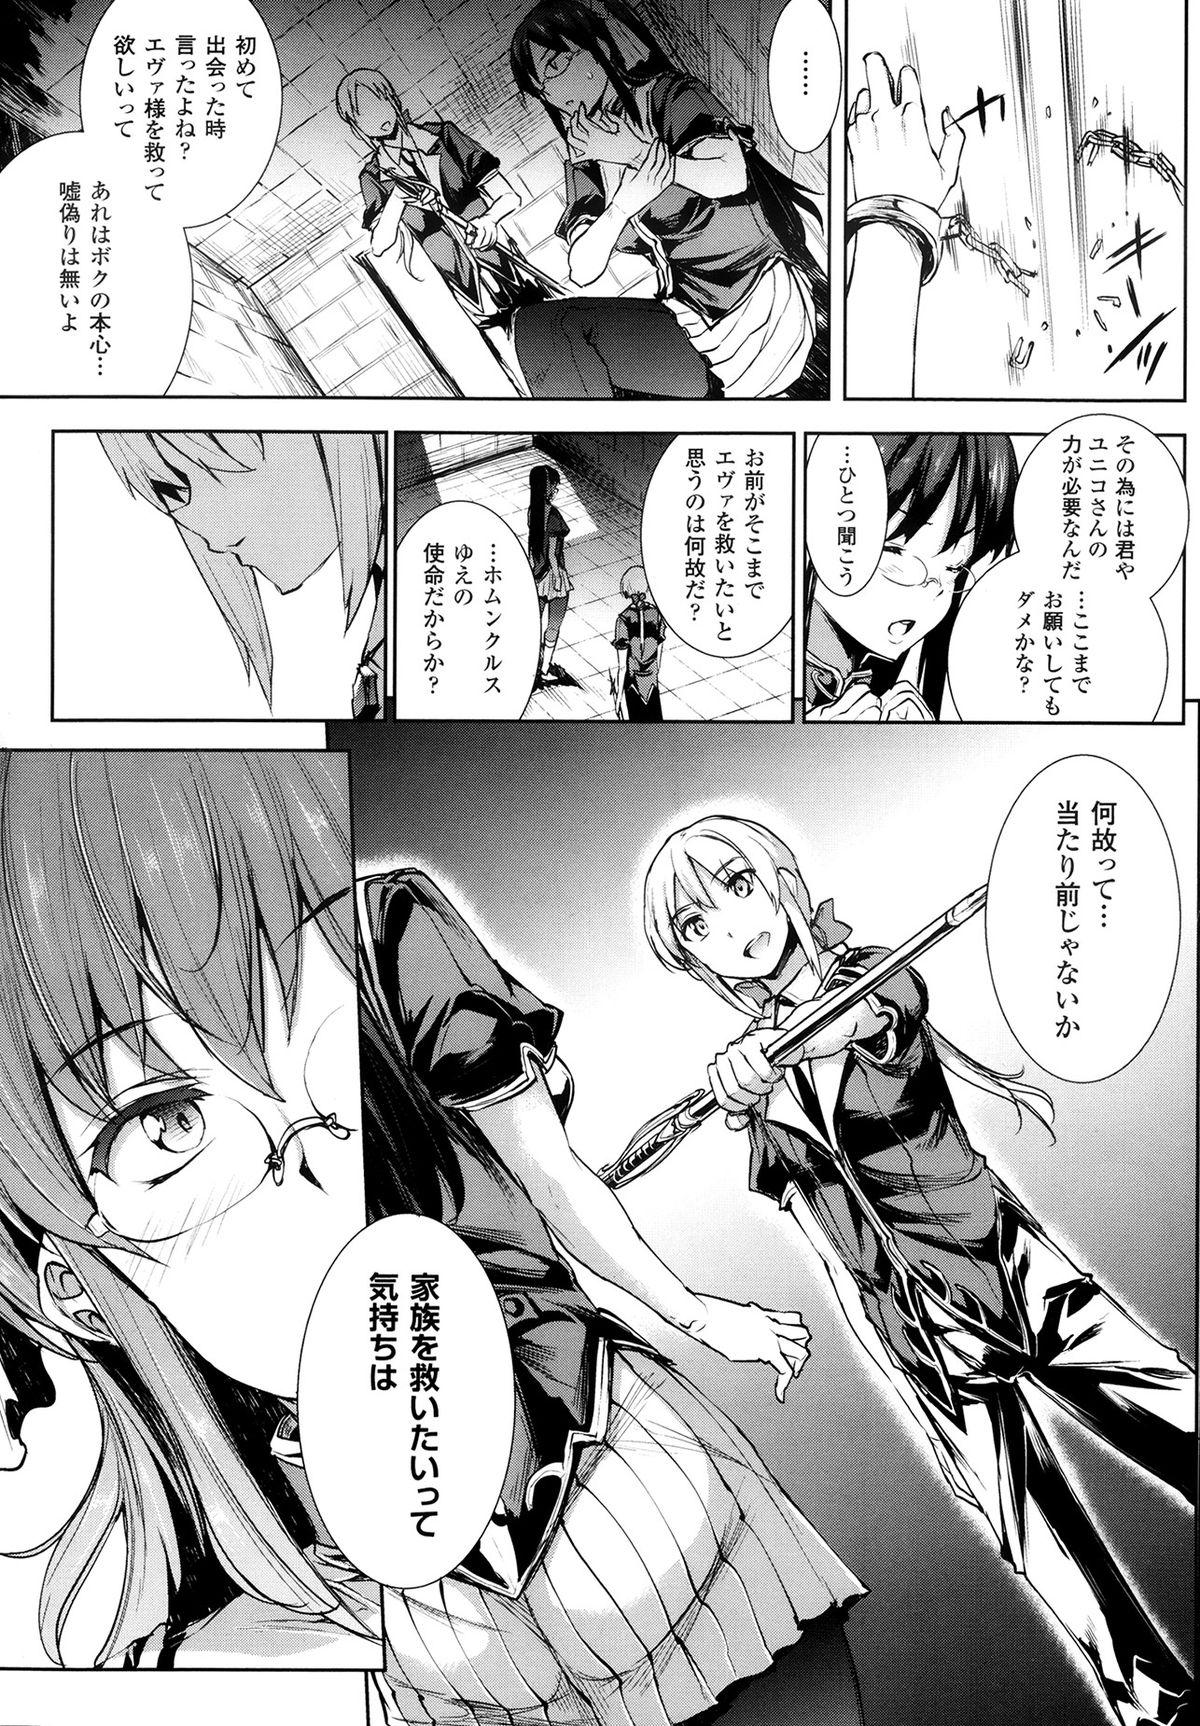 [Erect Sawaru] Shinkyoku no Grimoire -PANDRA saga 2nd story- Ch 07-9.5 33